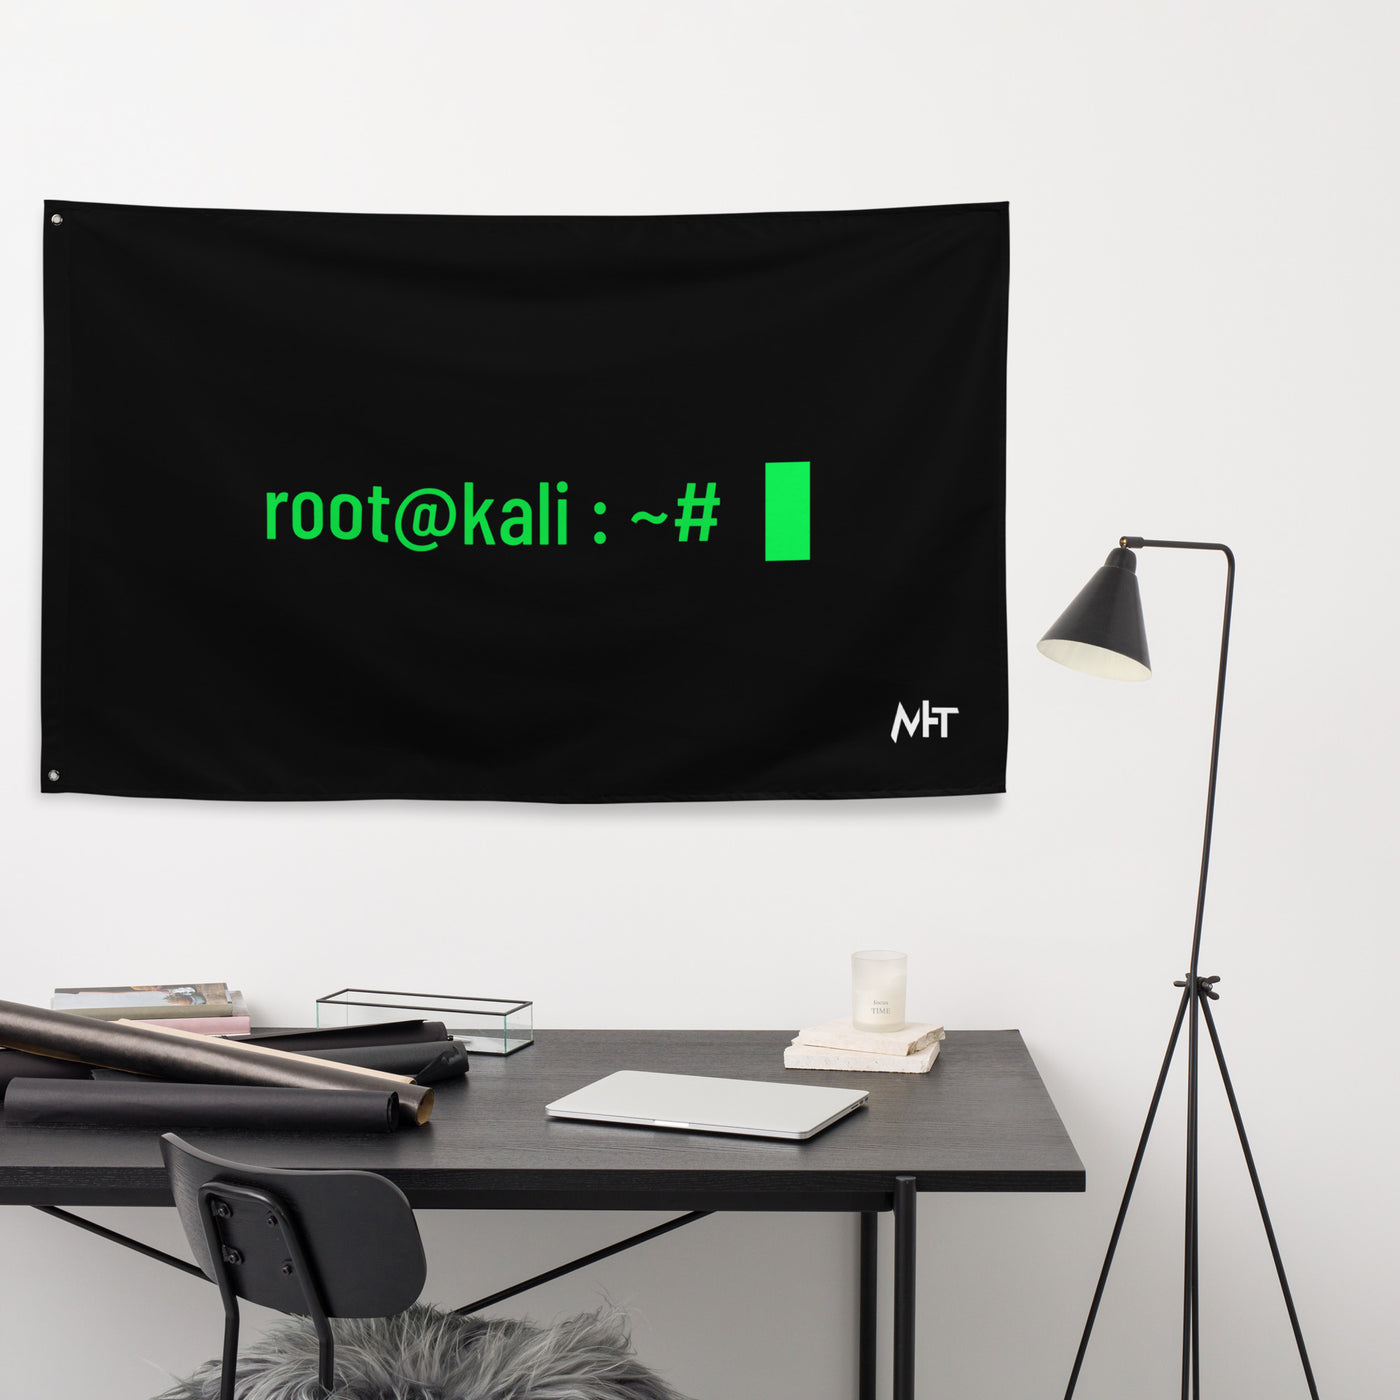 Root at kali - Flag